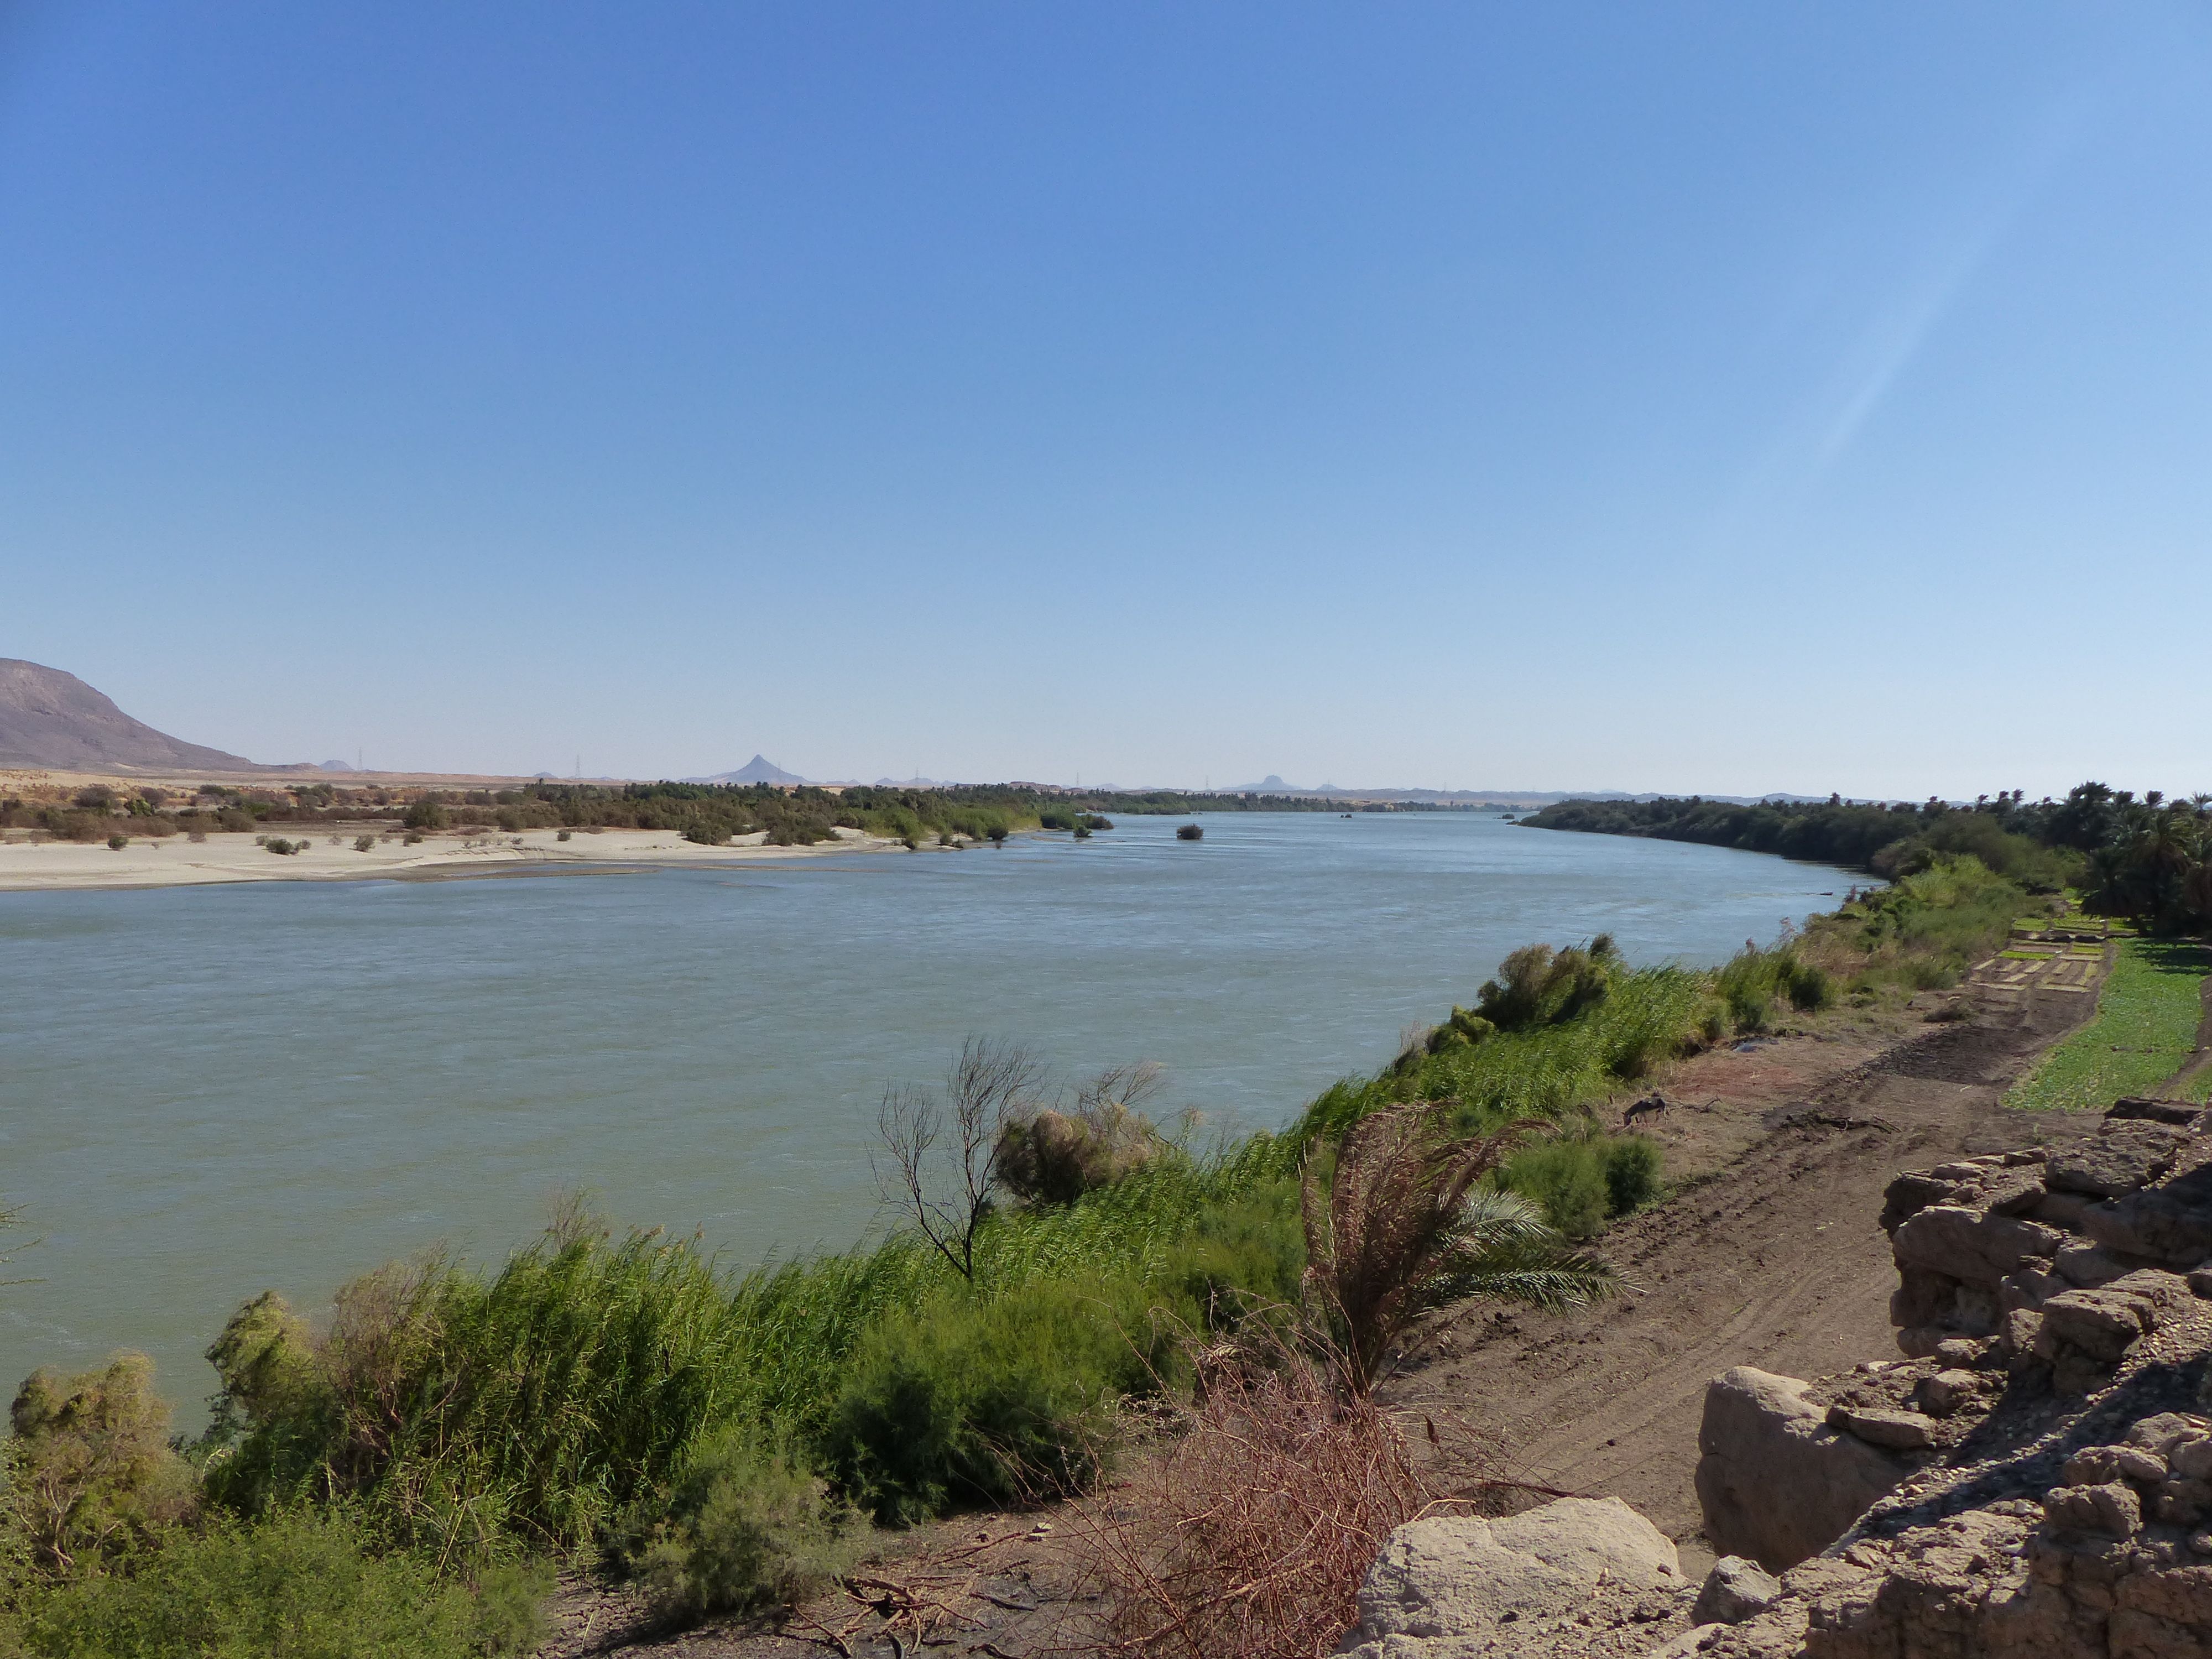 The Nile, Abri